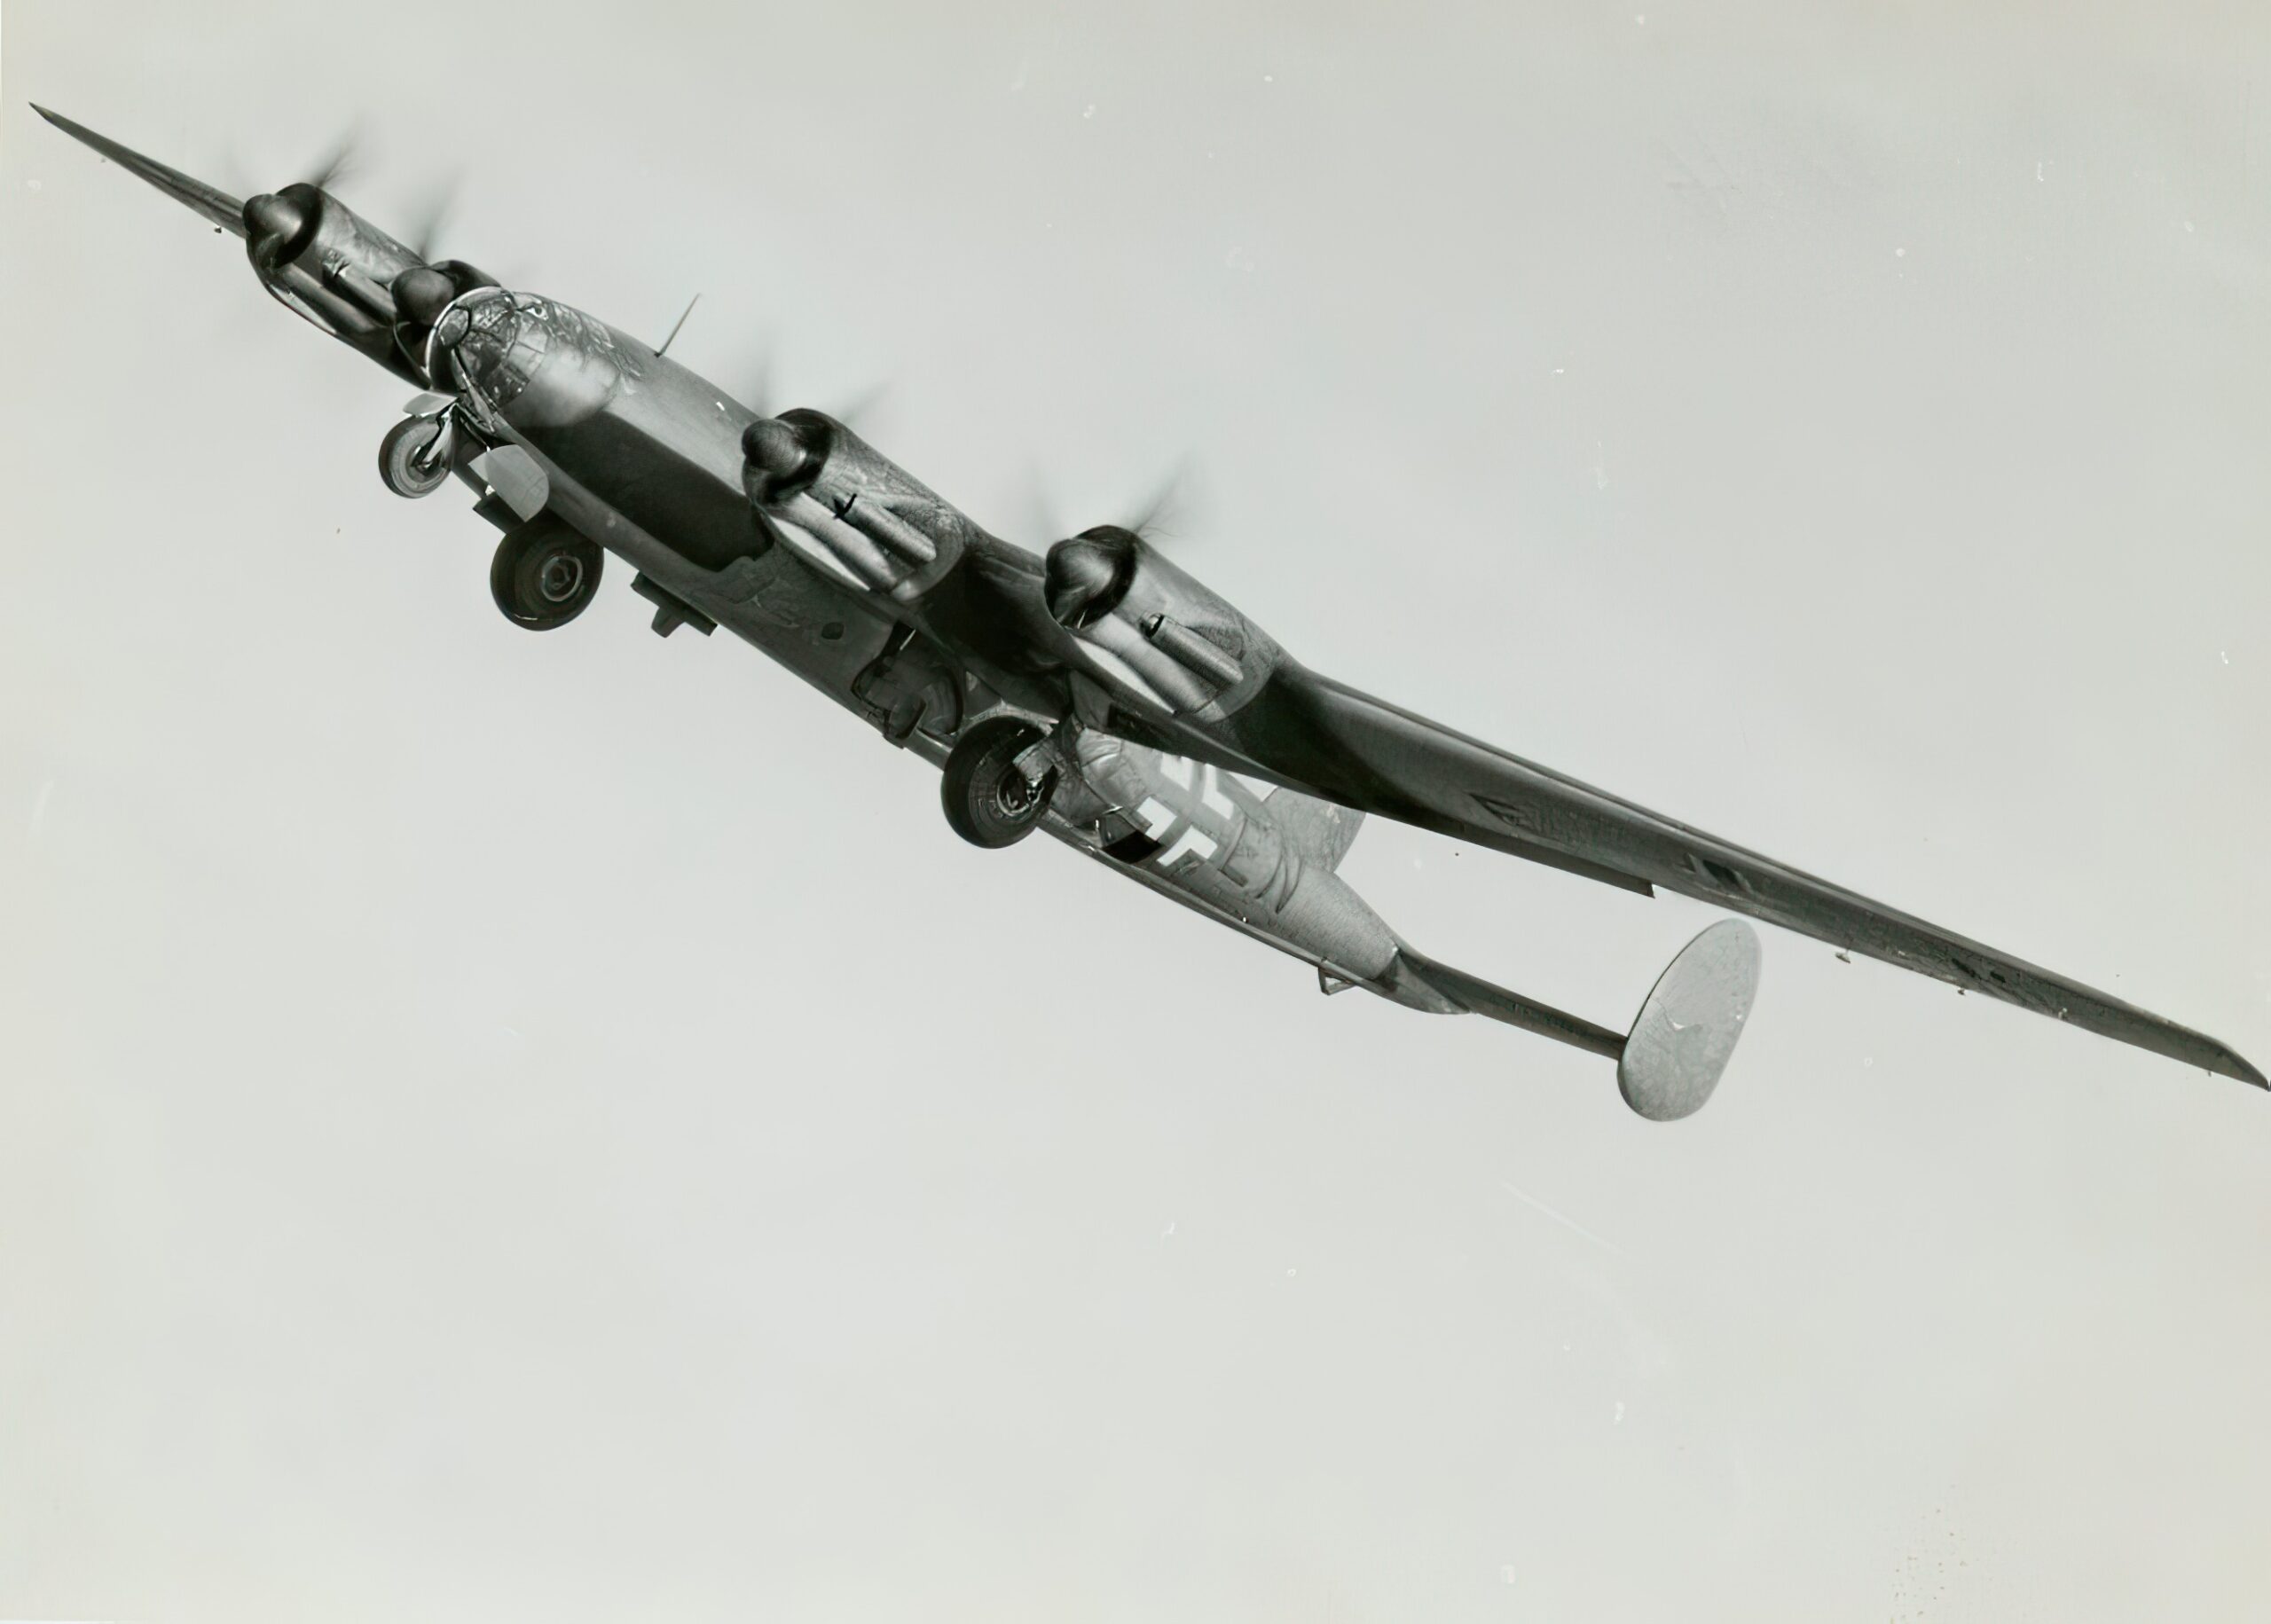 Messerschmitt Me 264 long-range bomber